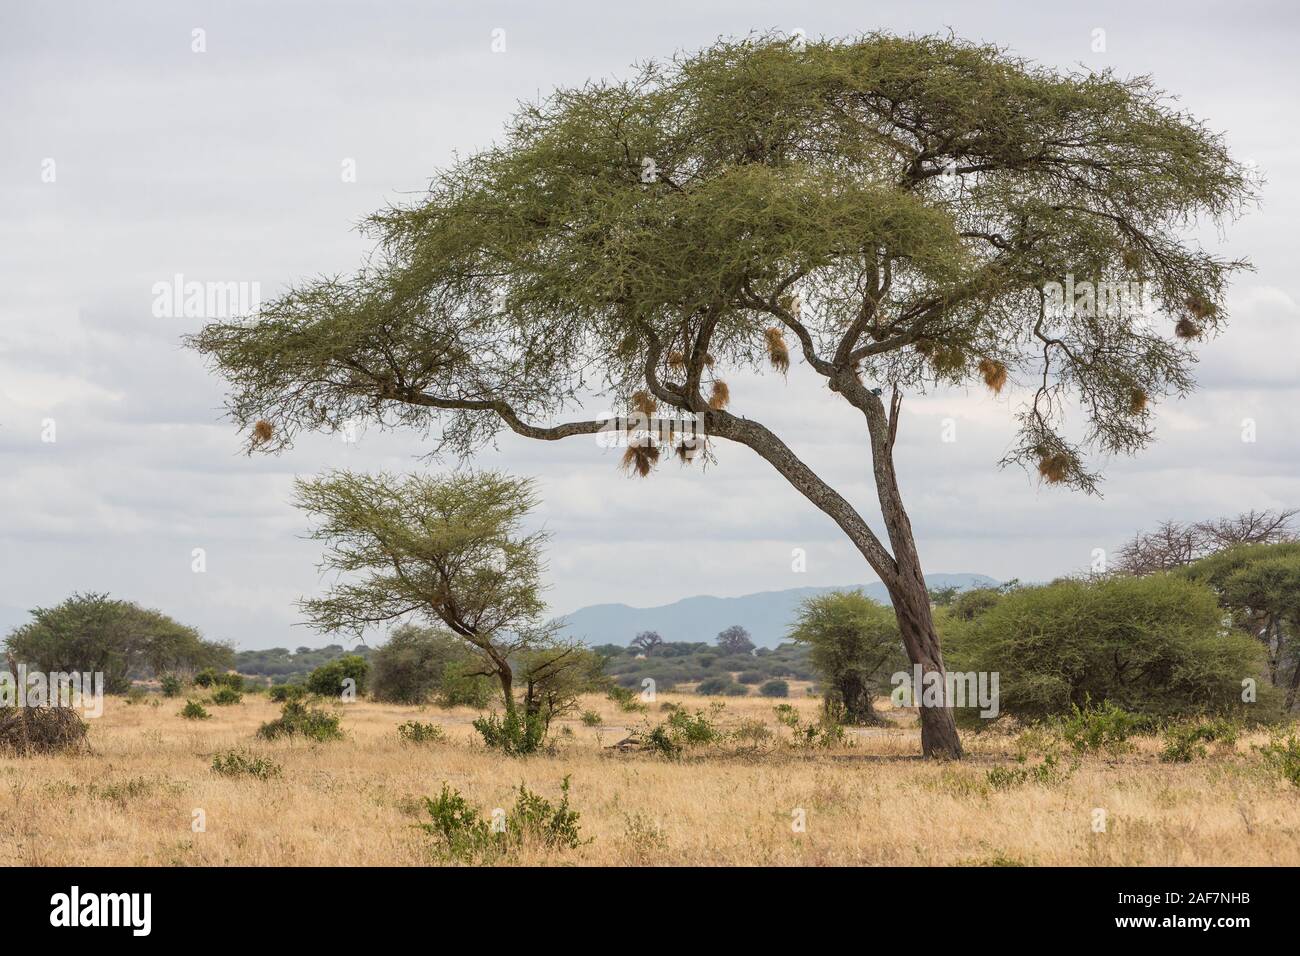 Tanzania. Tarangire National Park Scenery, Acacia Tree with Birds' Nests. Stock Photo